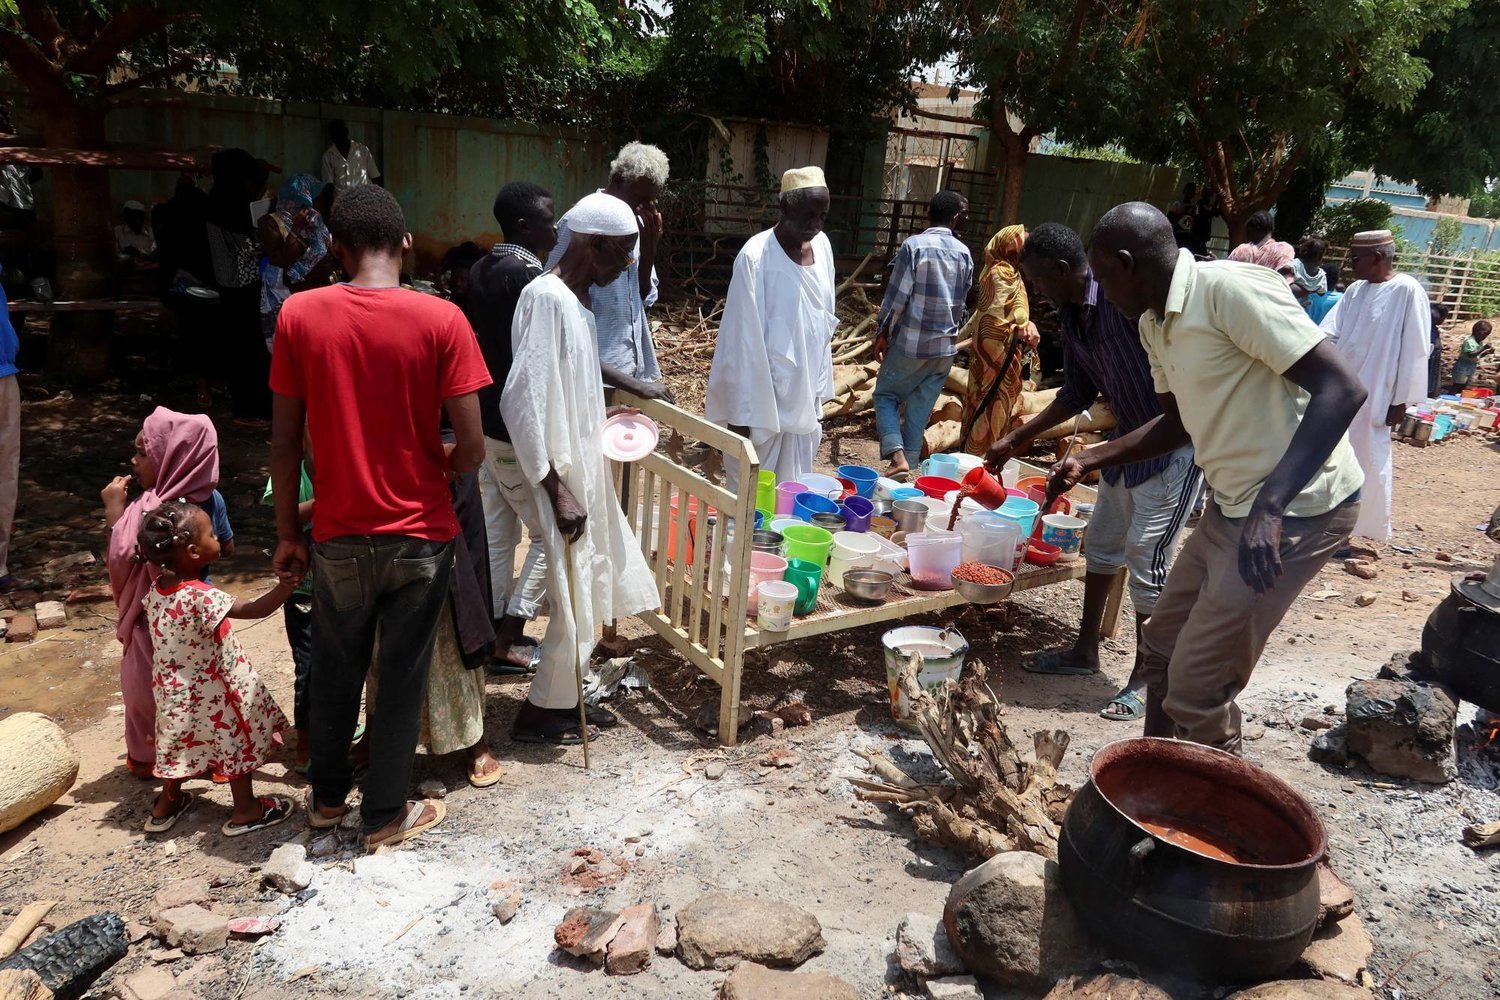 Omdurman'da gönüllülerden yiyecek almayı bekleyen vatandaşlar (Reuters)